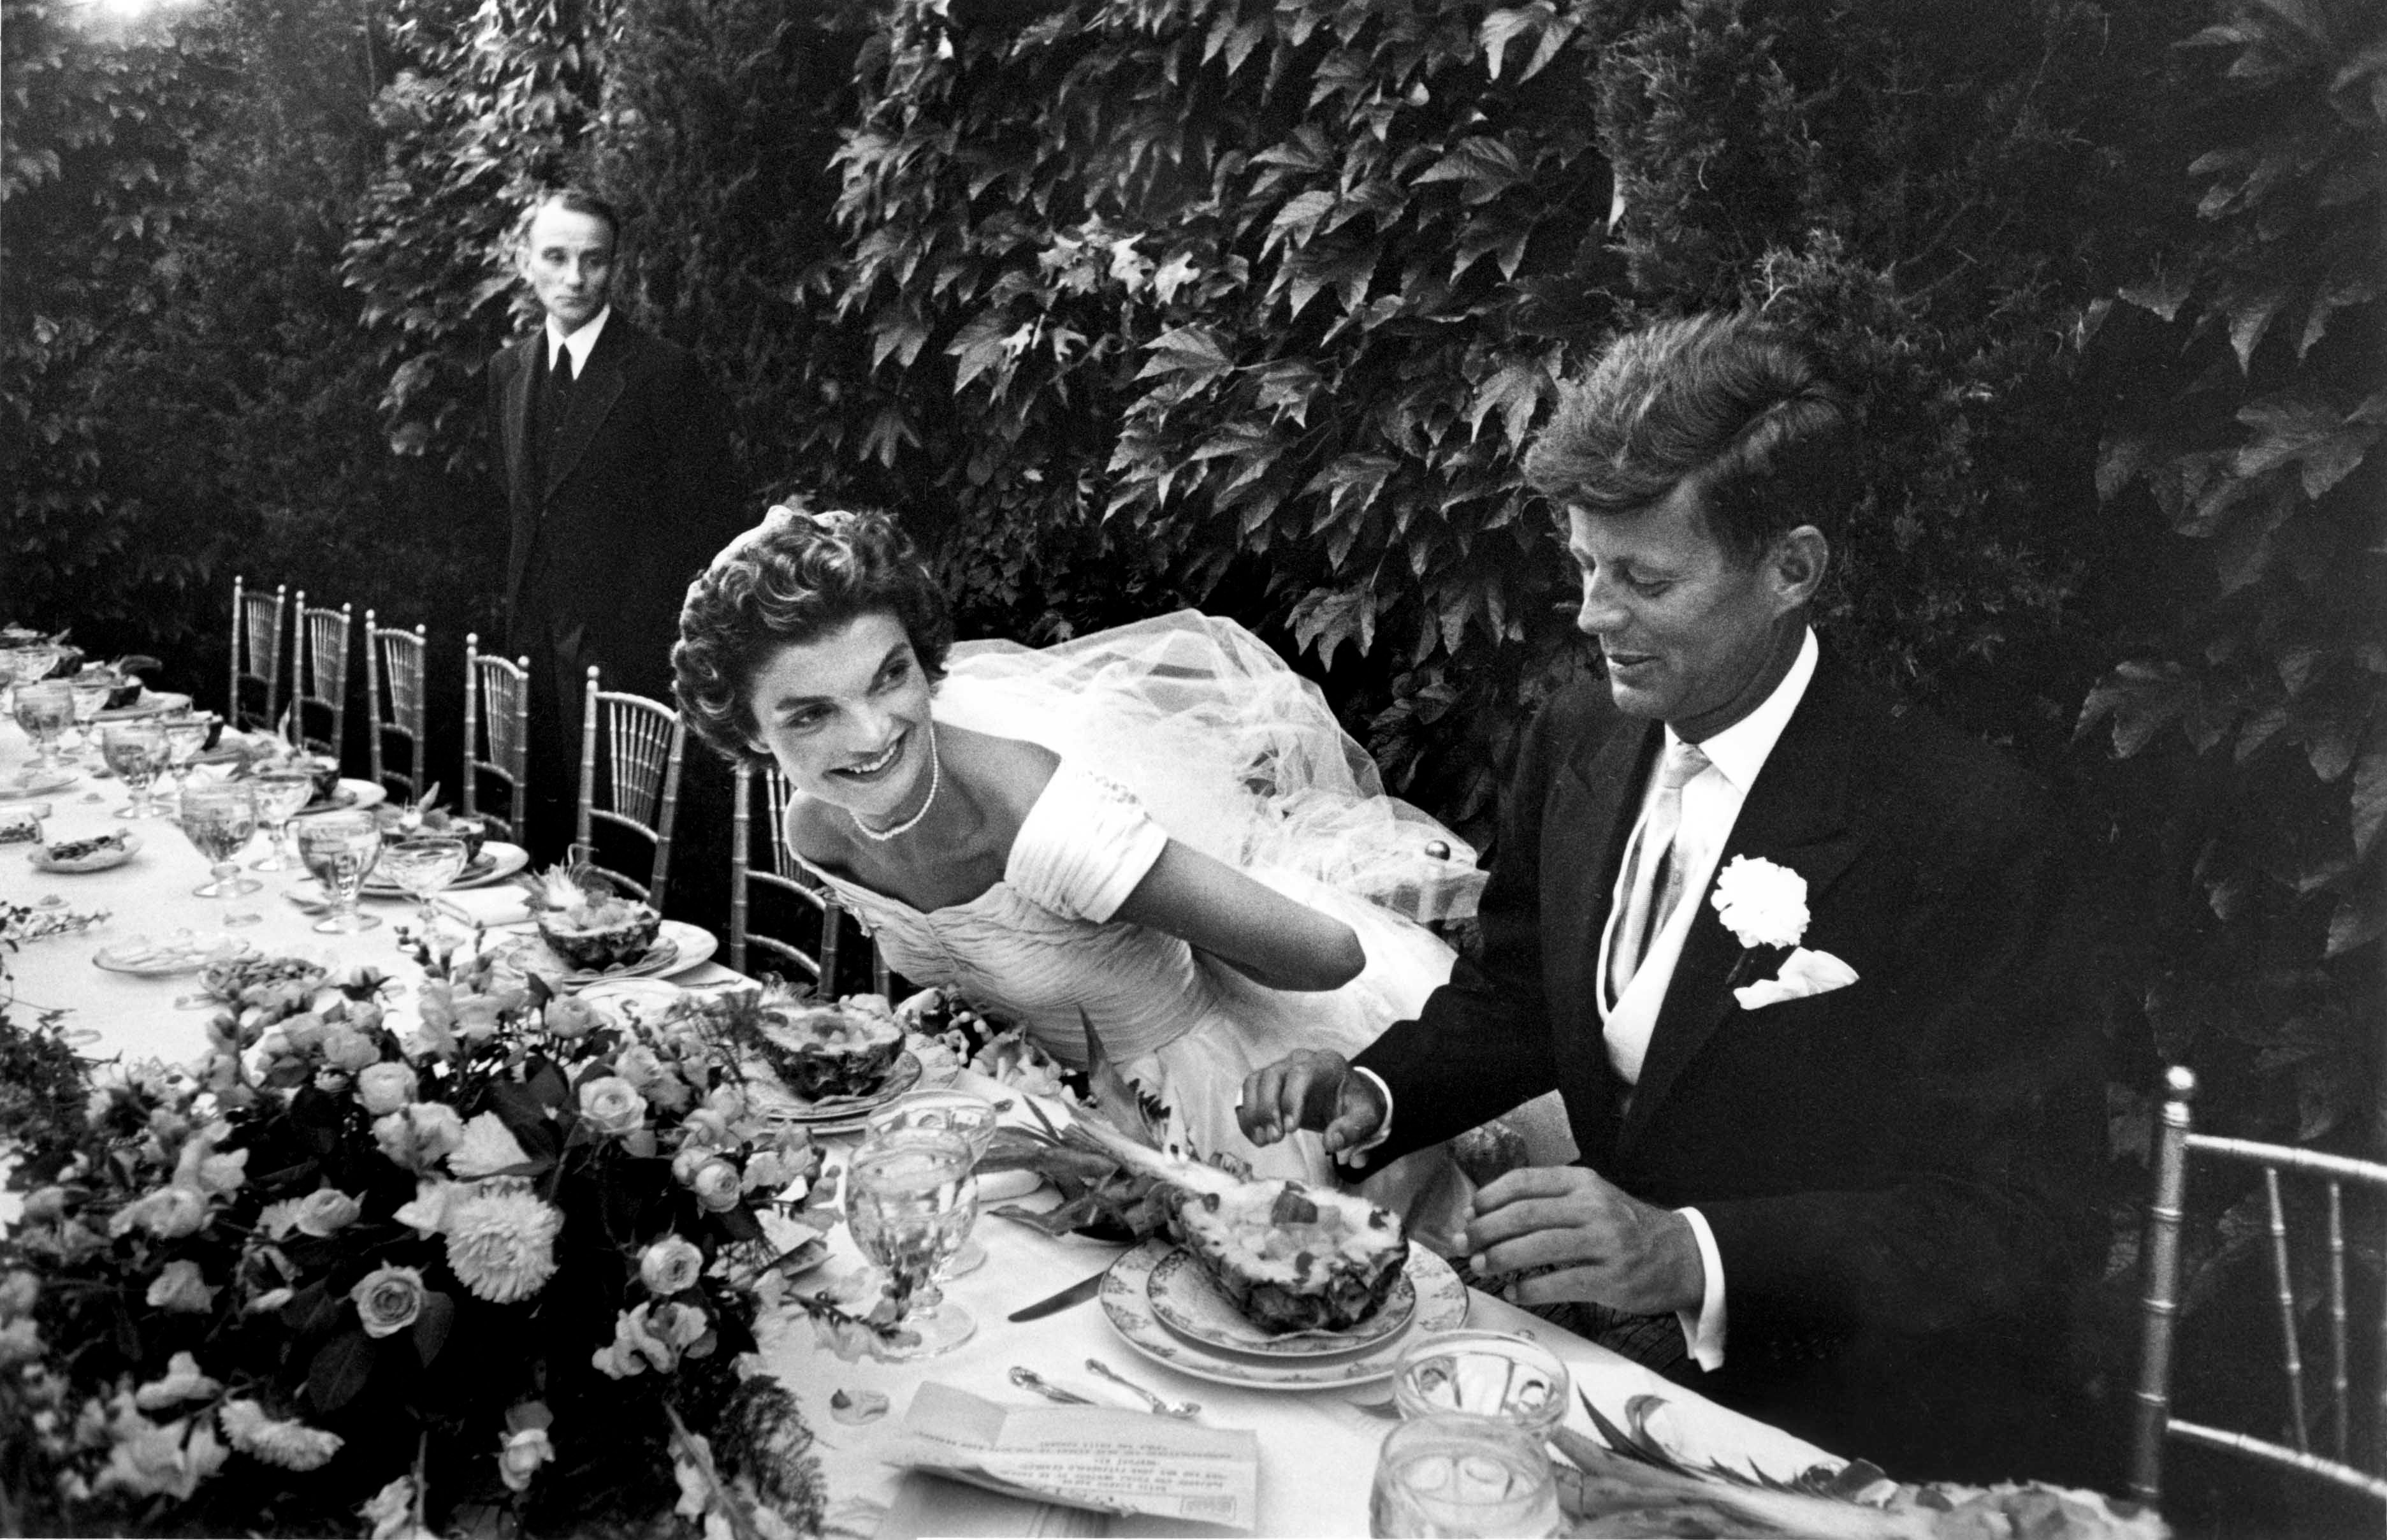 Jacqueline y el senador John Kennedy en la recepción de su boda el 12 de septiembre de 1953, en Newport, Rhode Island. | Foto: Getty Images